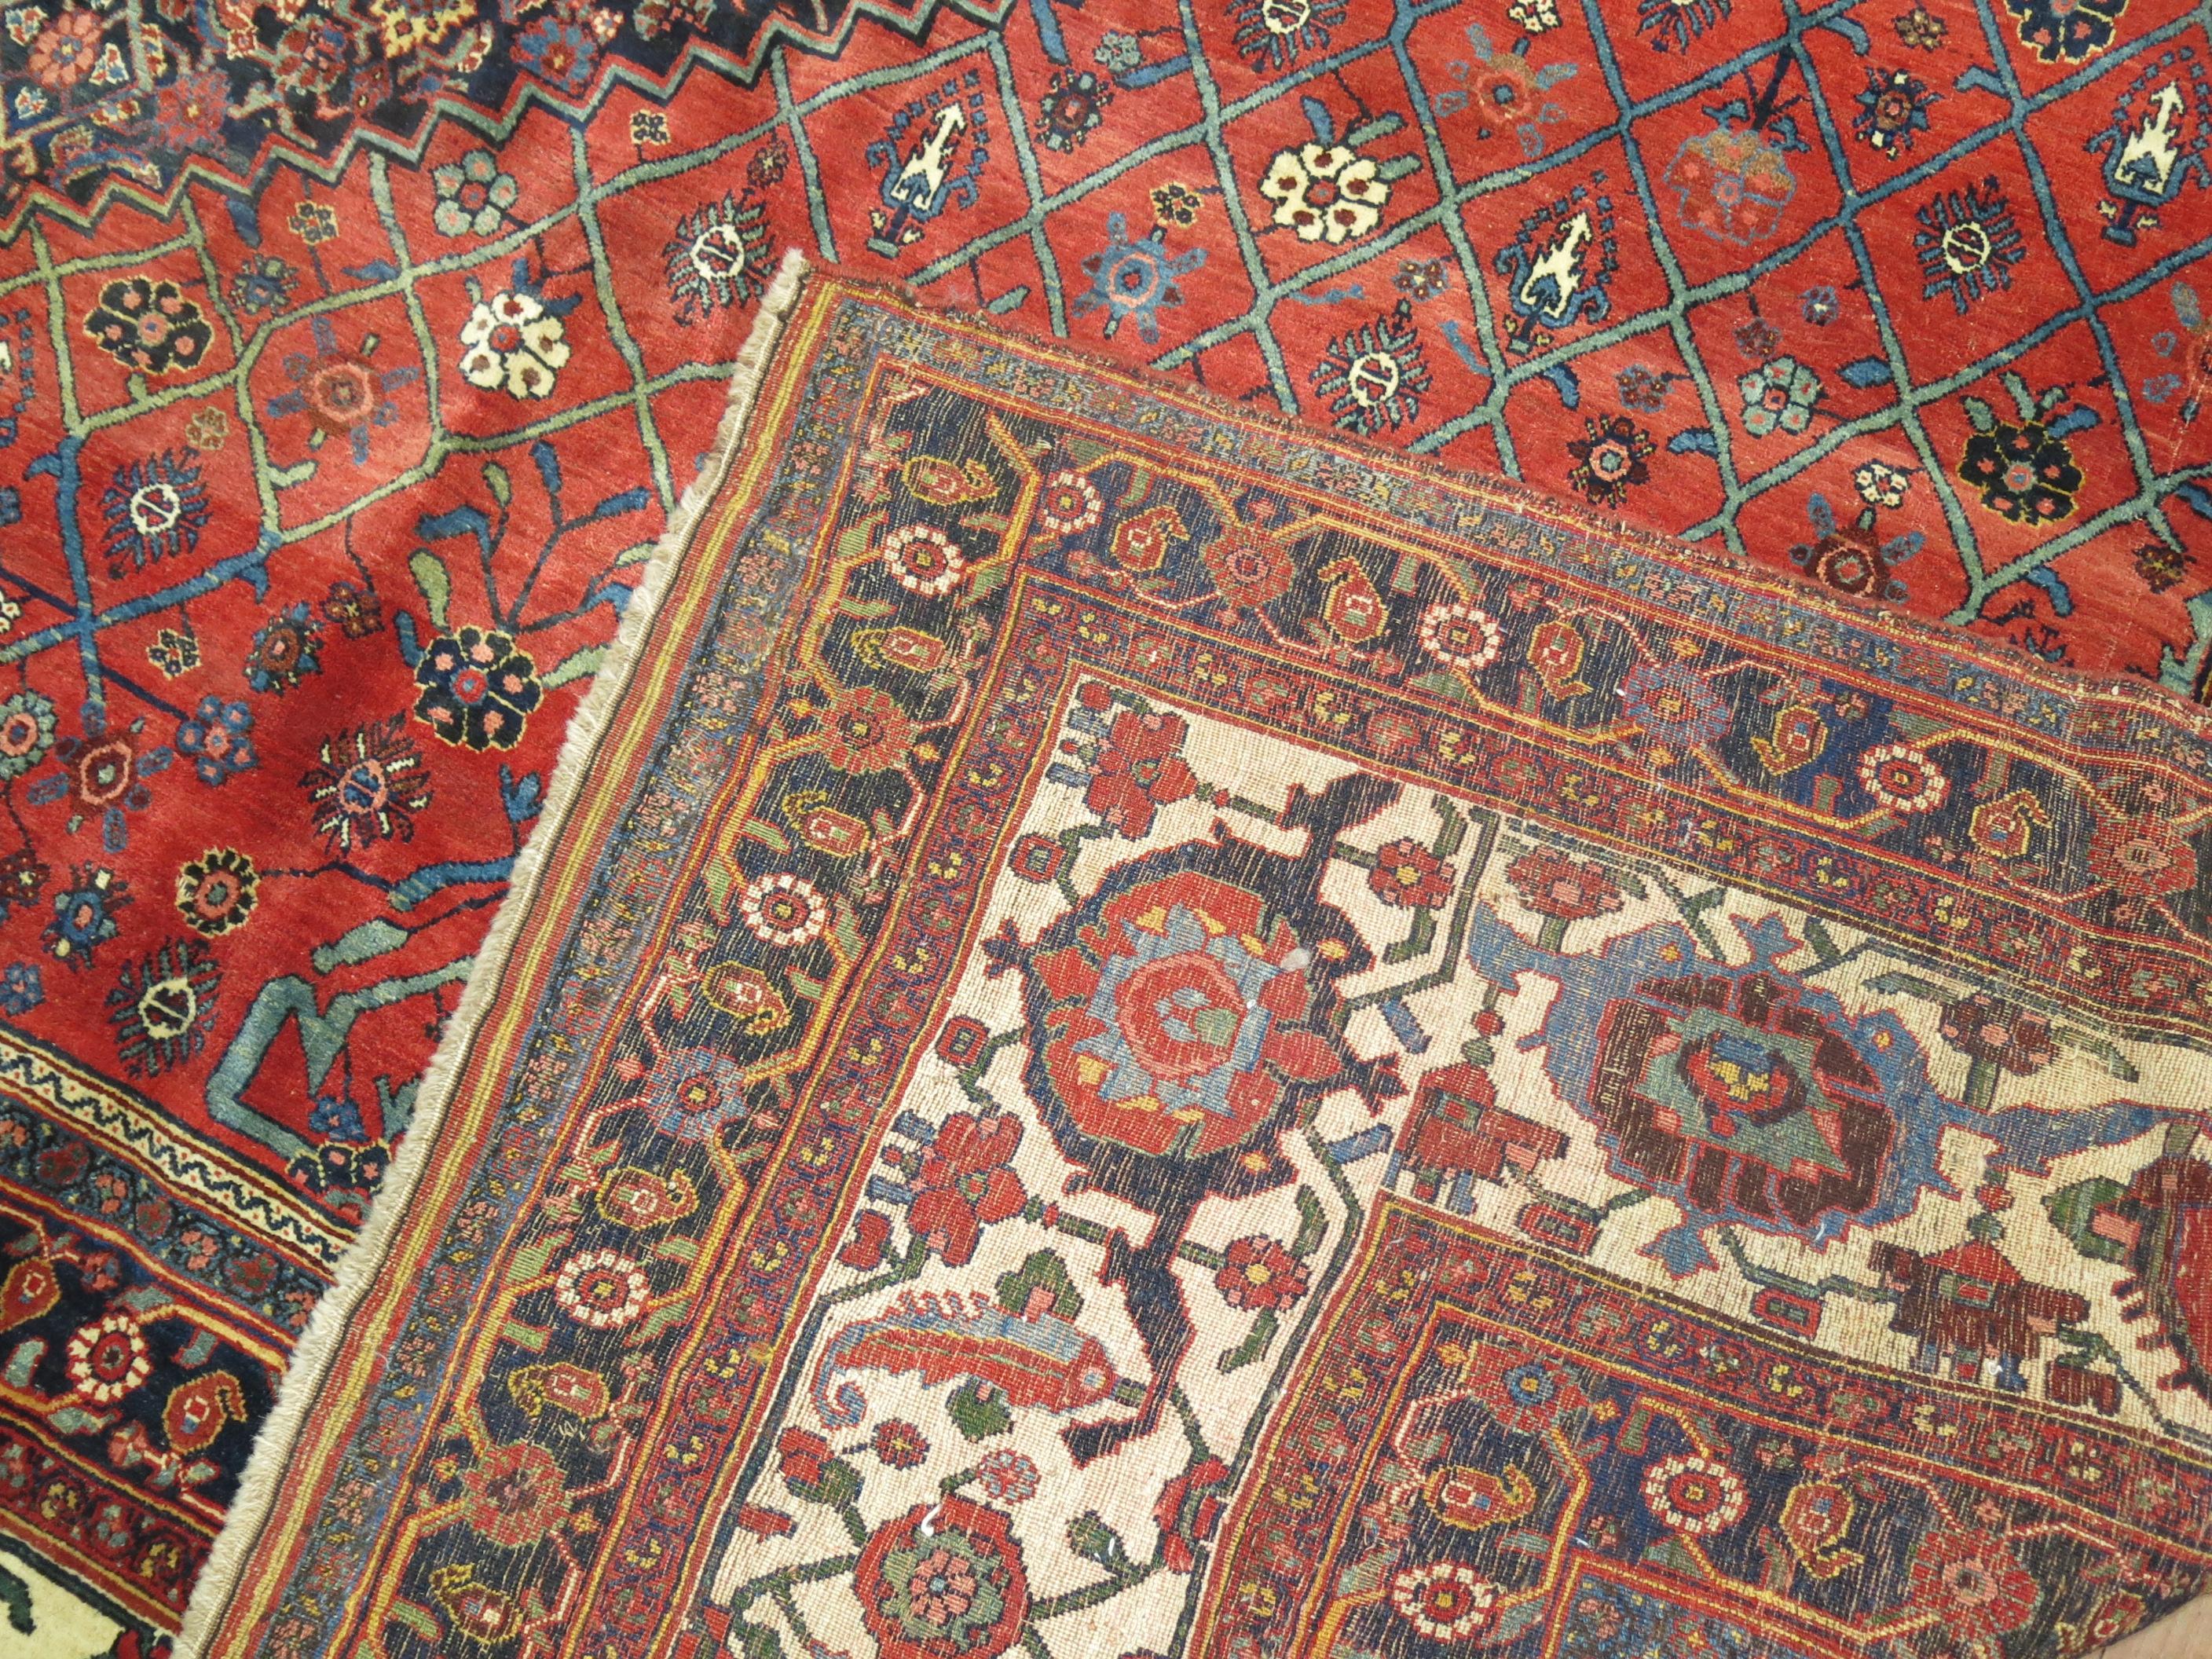 Eine authentische ein von einer Art klassischen Palast Größe antiken persischen Bidjar Teppich in erstaunlich ausgezeichneten vollen Flor Zustand.

Bidjar-Teppiche sind weltberühmt für ihre hervorragende Kunstfertigkeit, ihre Handwerkskunst und